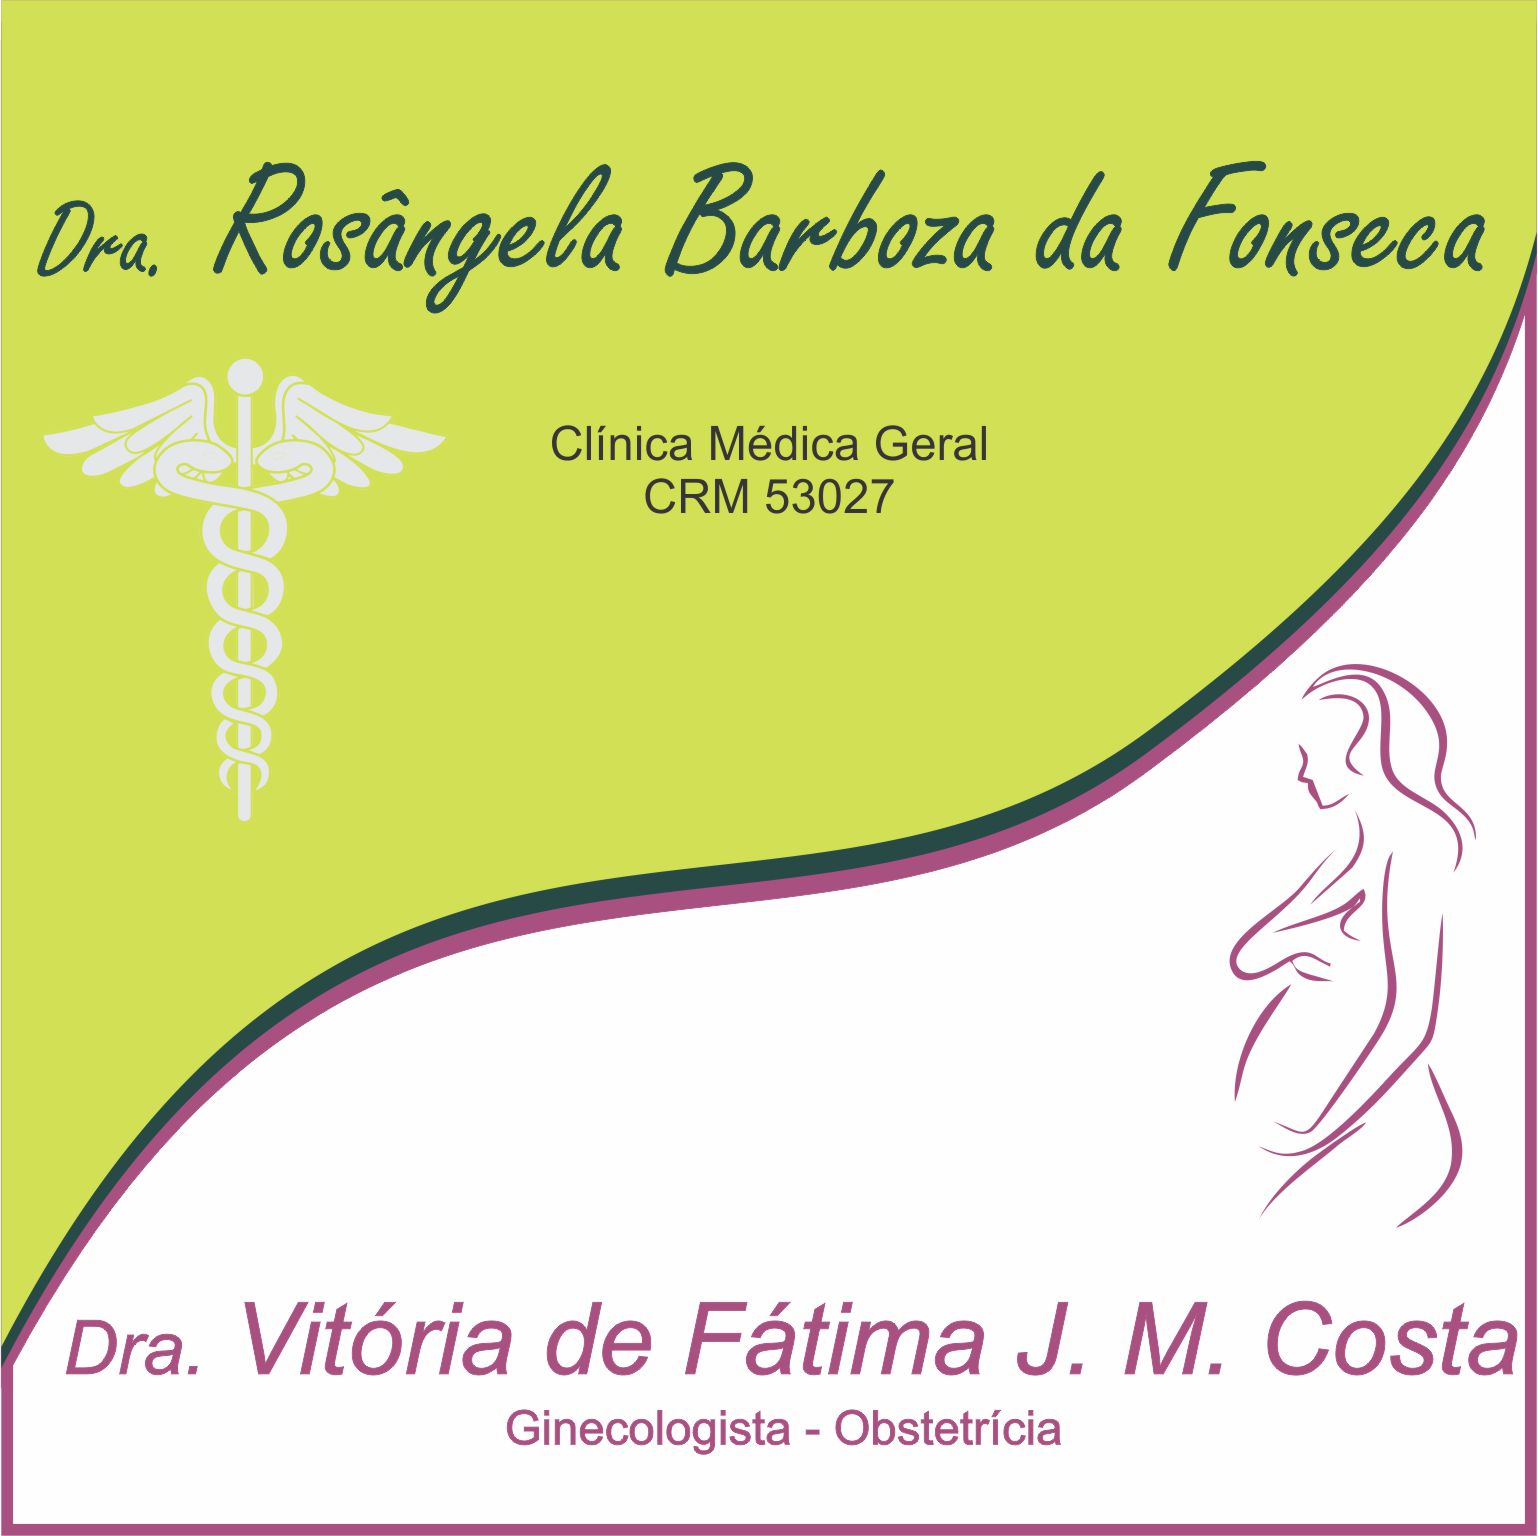 Dra. Rosângela Barboza da Fonseca